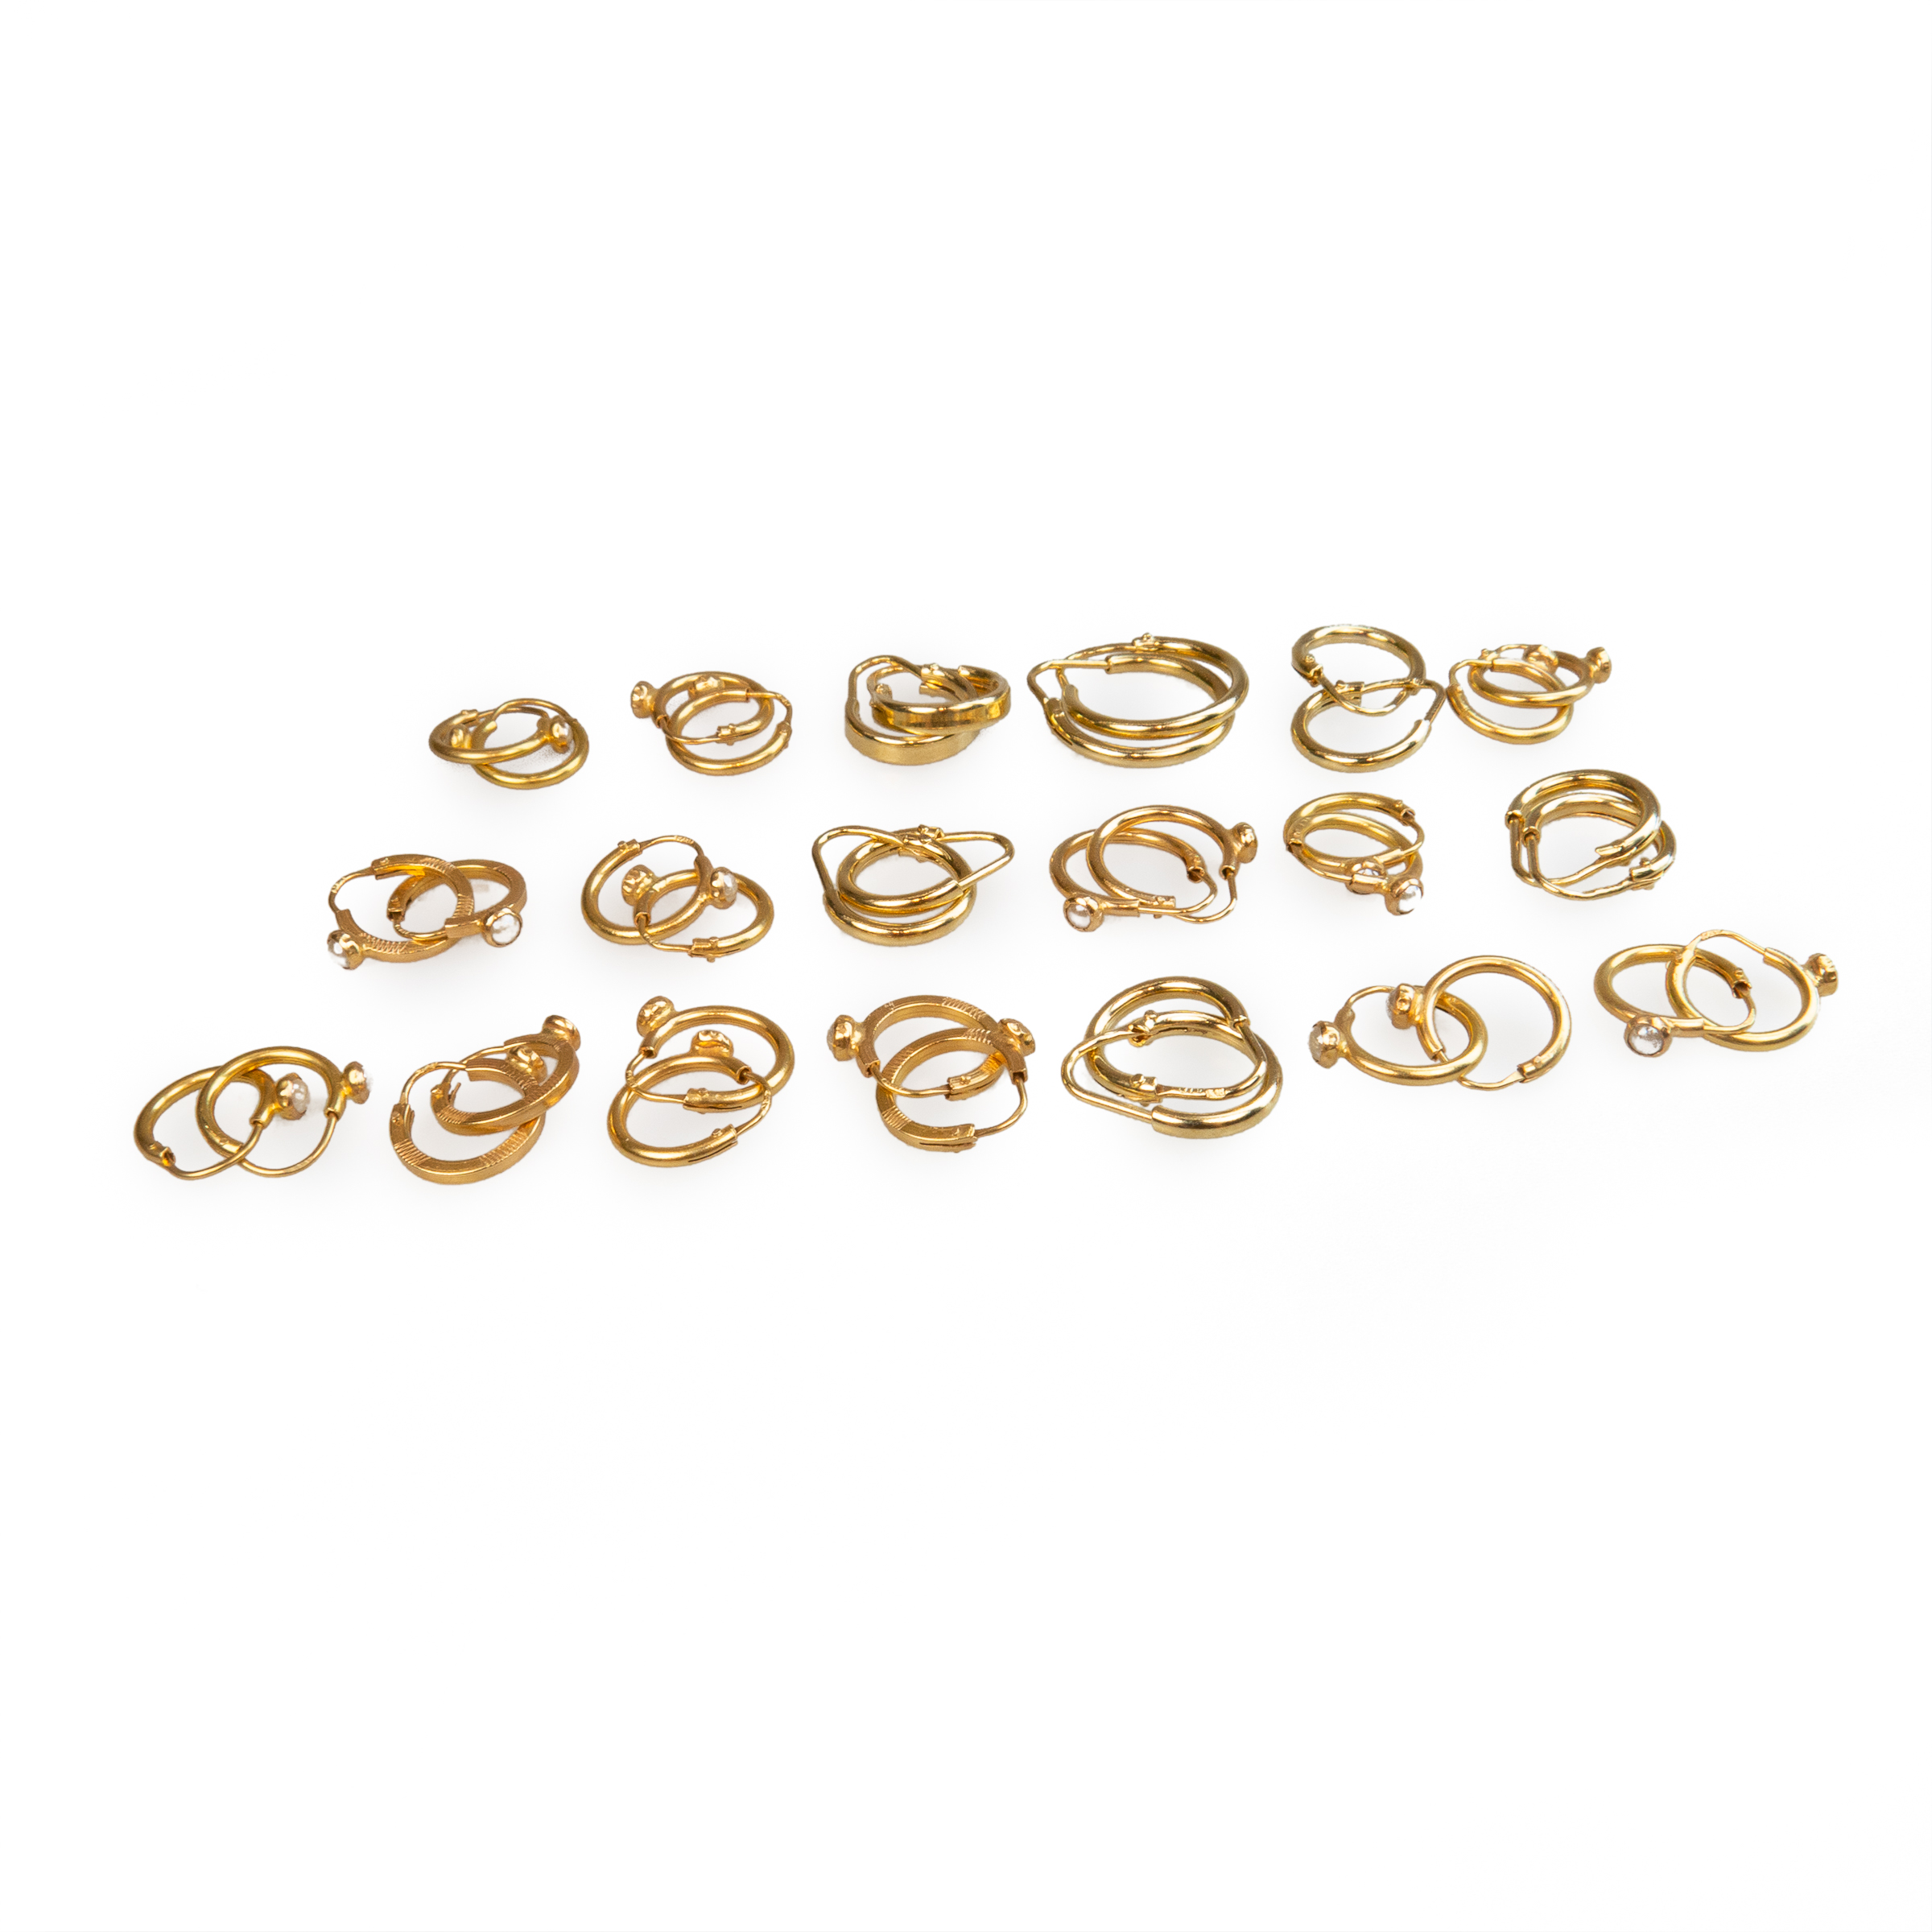 19 x Pairs Of 18k Yellow Gold Hoop Earrings